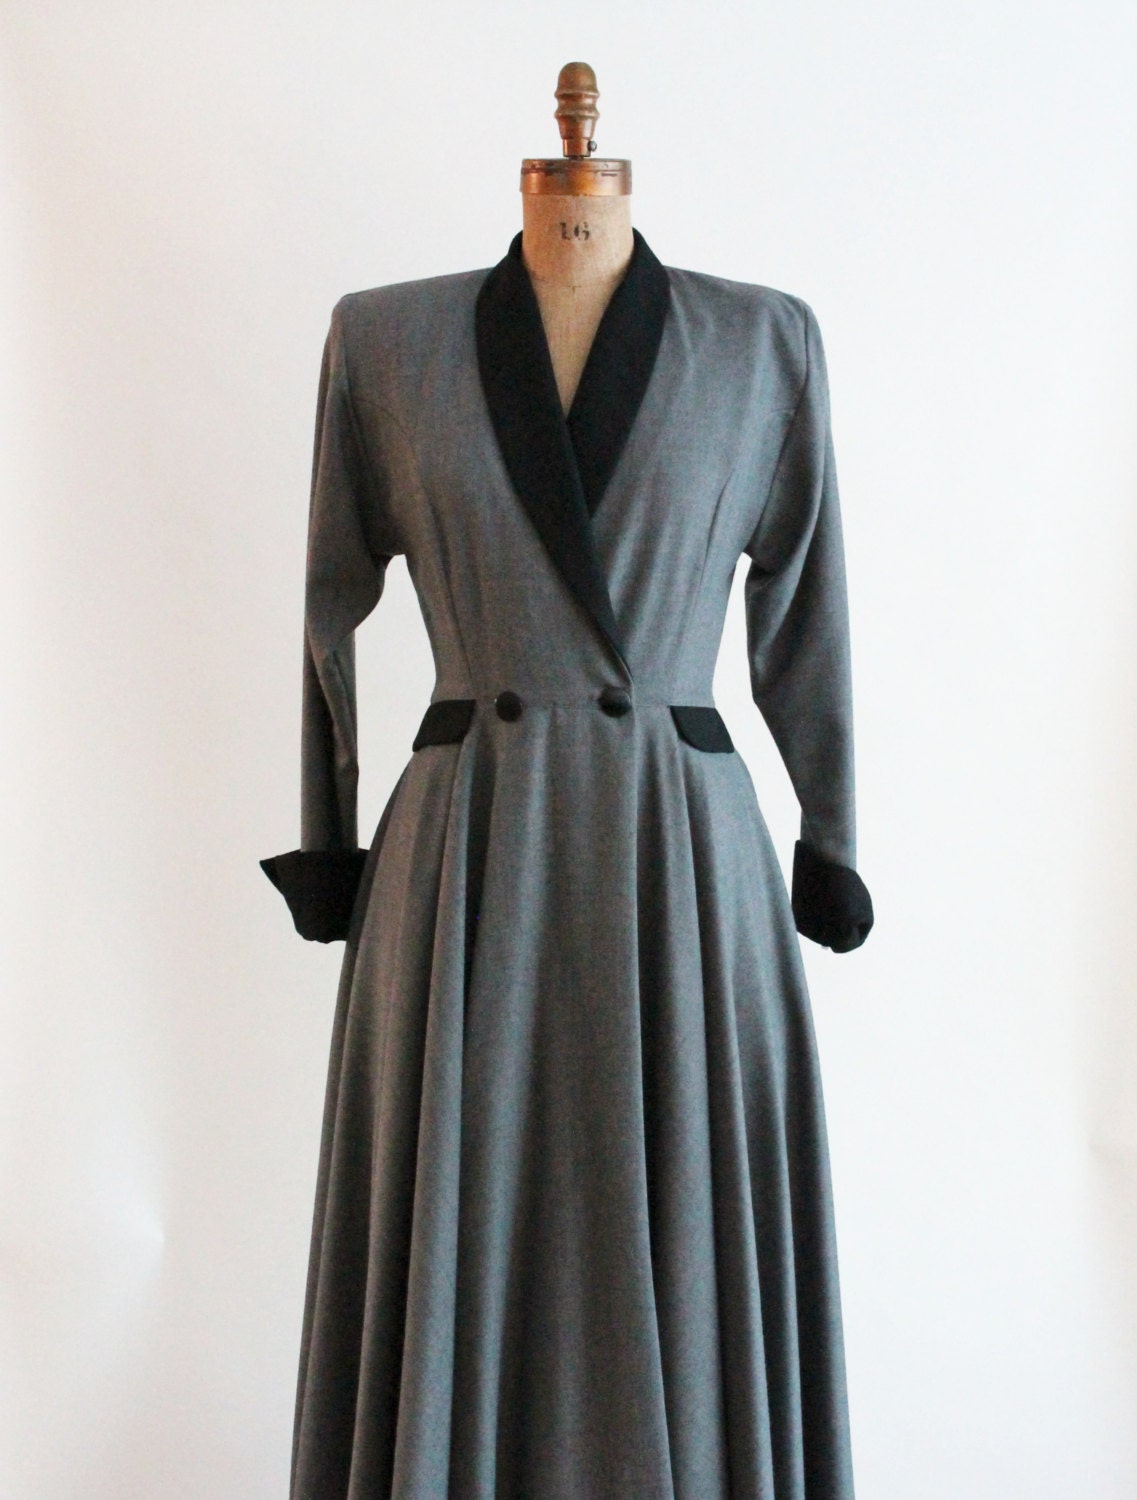 equestrian coat dress - virgin wool coat dress - QuinceVintage